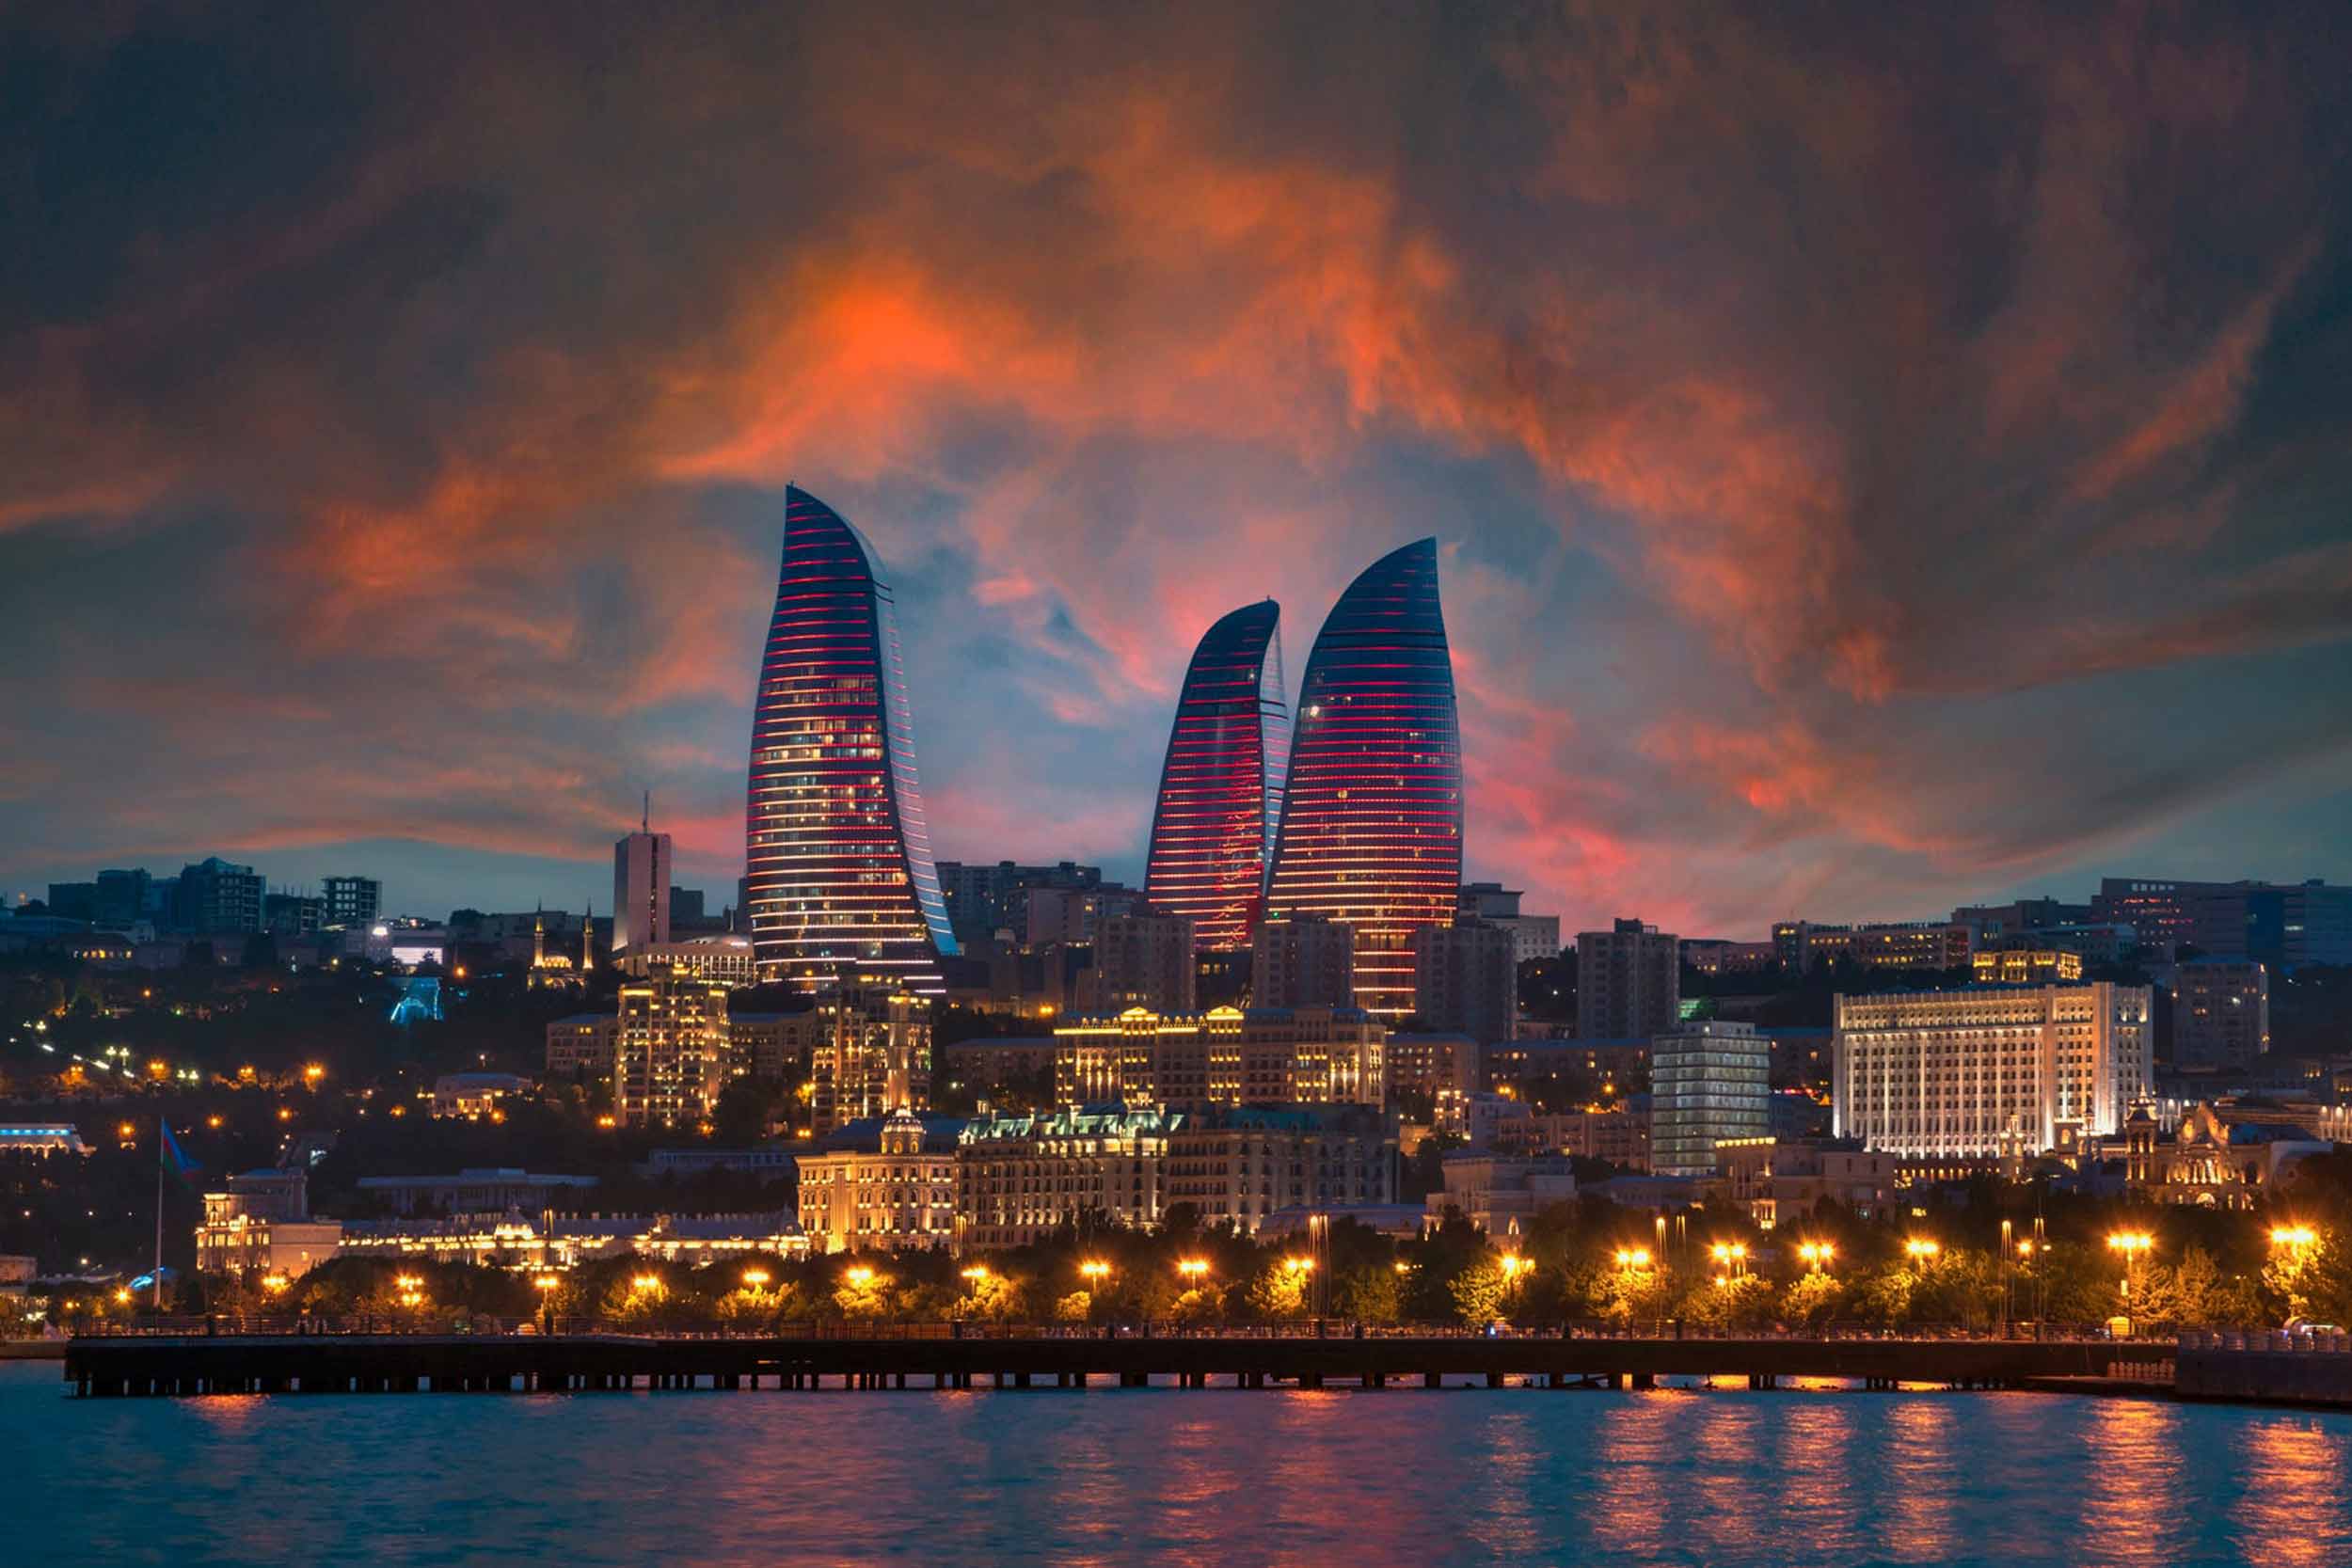 Sunset view of Baku, the capital of Azerbaijan